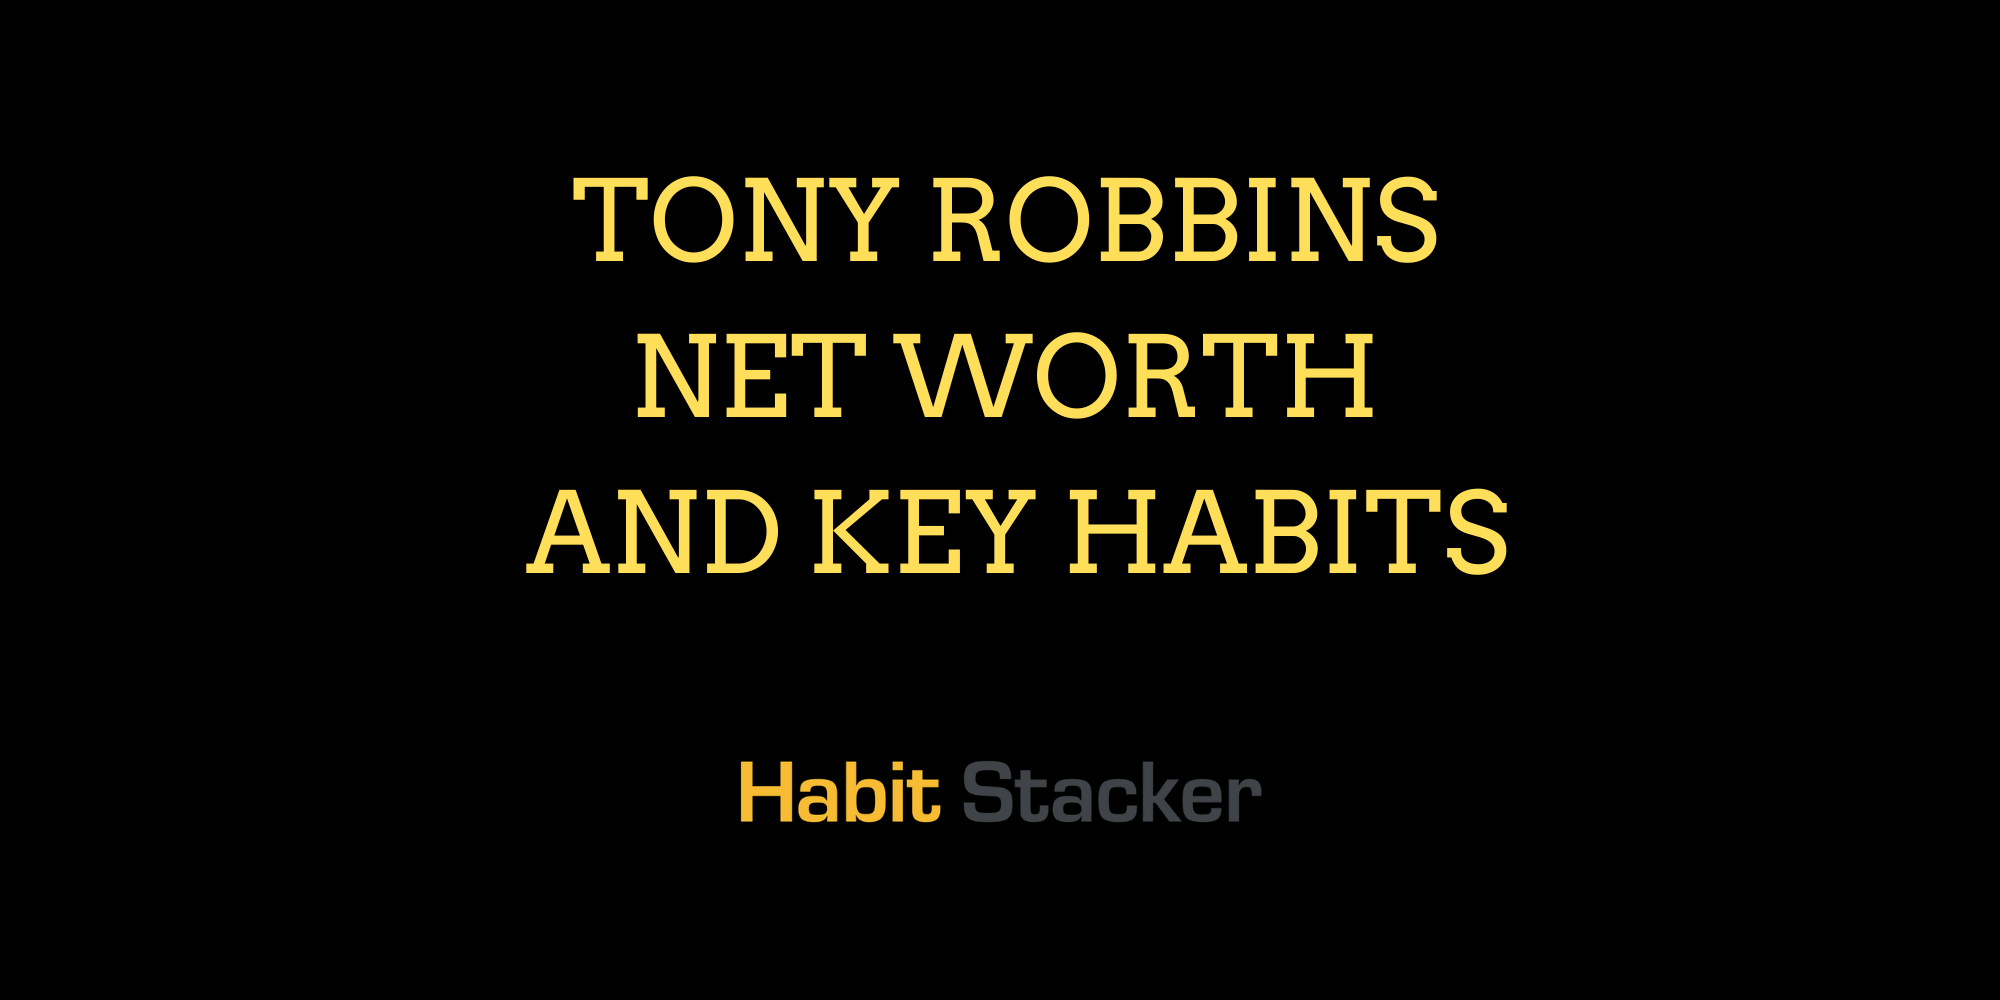 Tony Robbins Net Worth and Key Habits